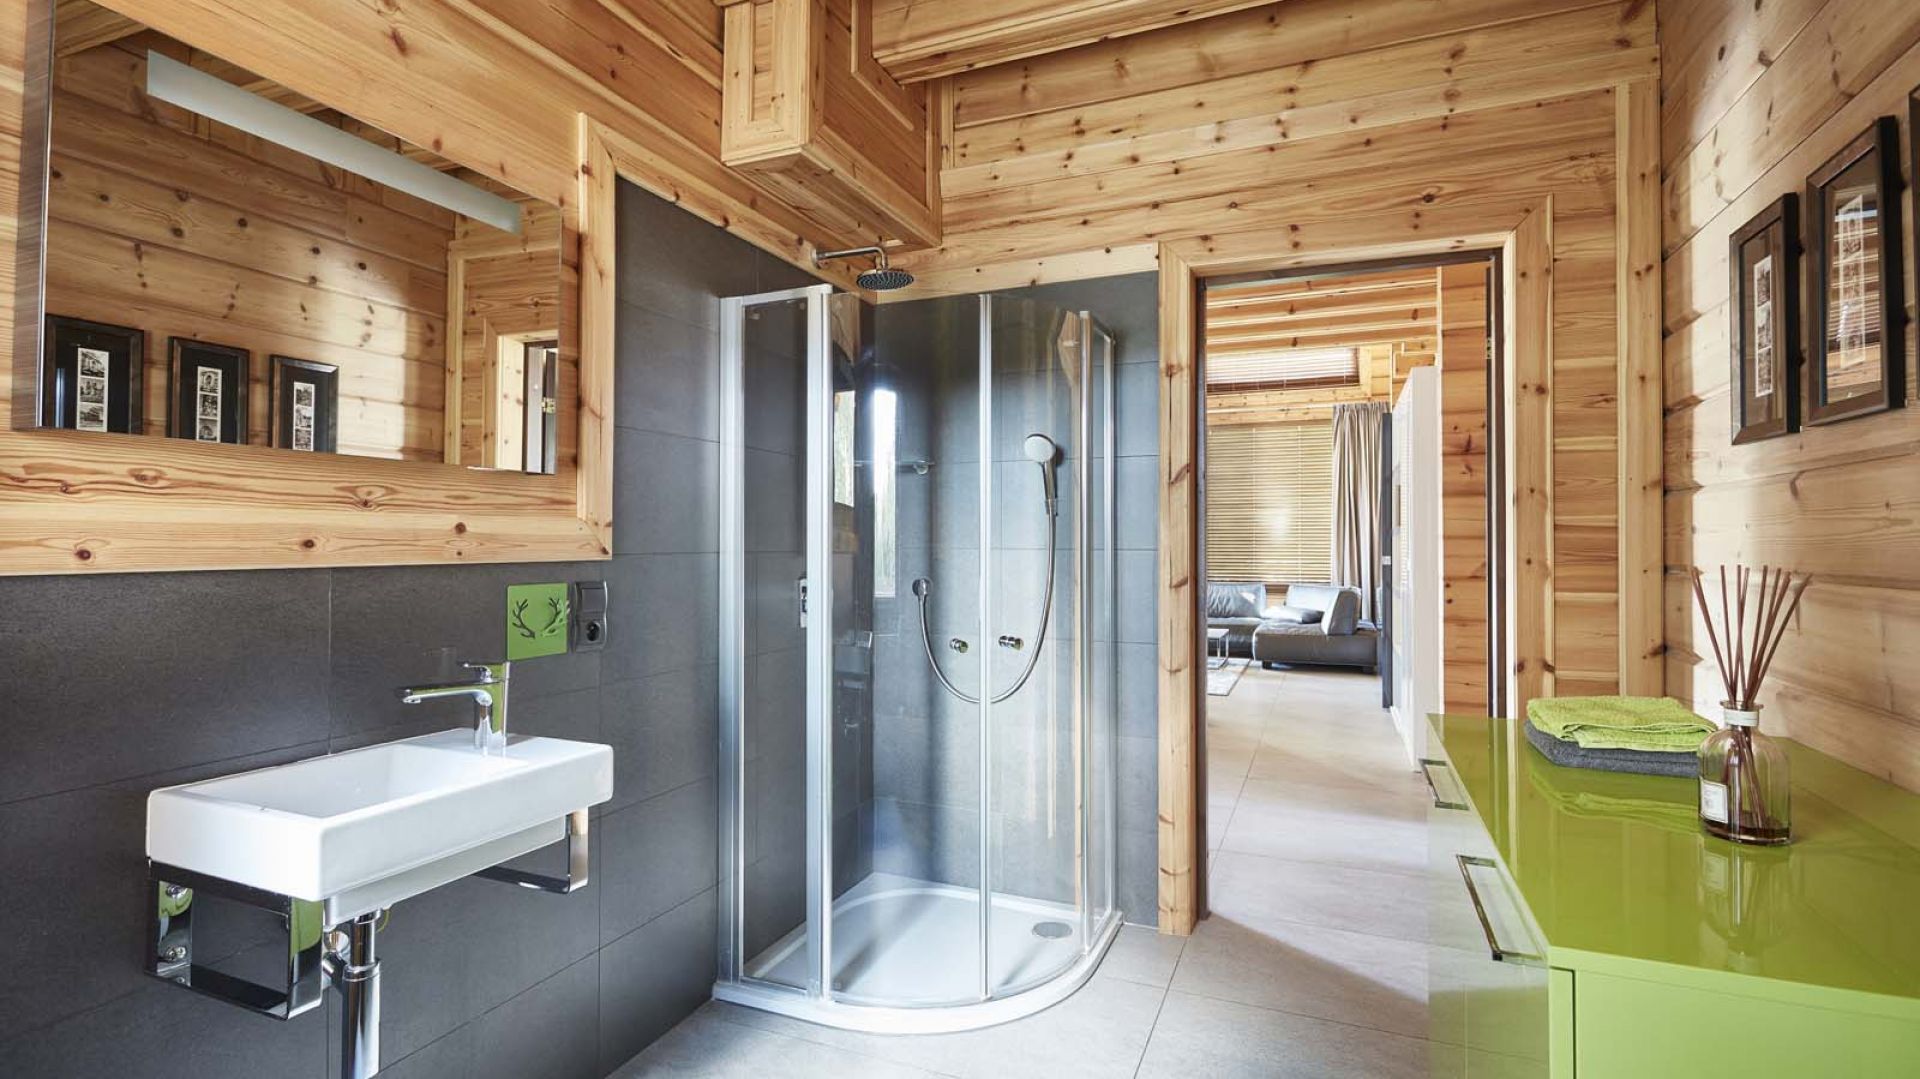 Łazienka w drewnie: zobaczcie wnętrza domu z bala